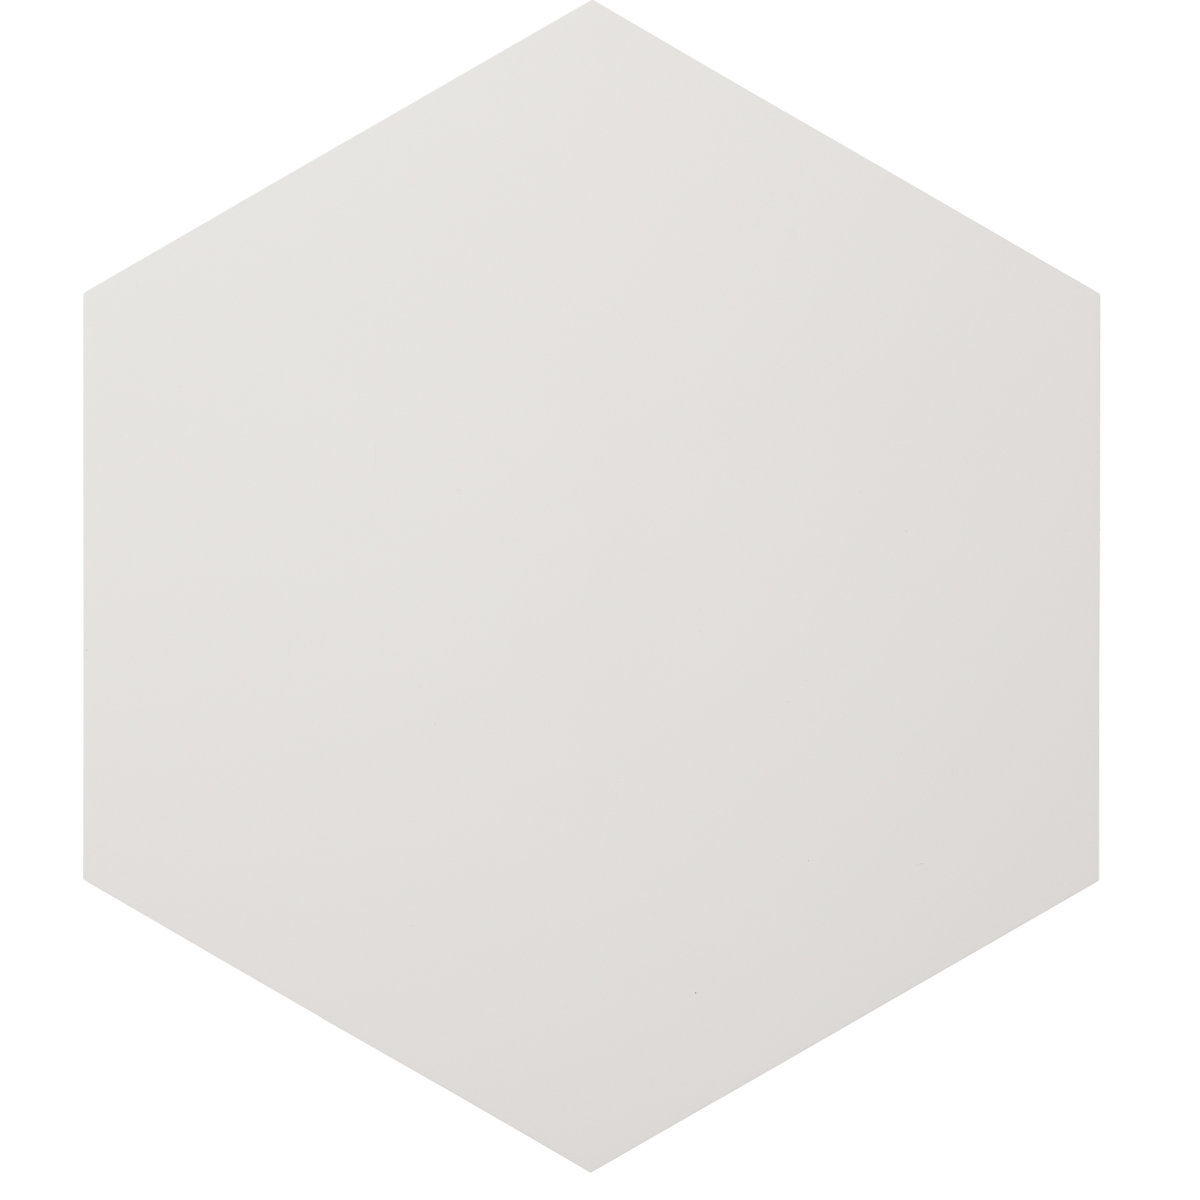 Tableau blanc design – Chameleon